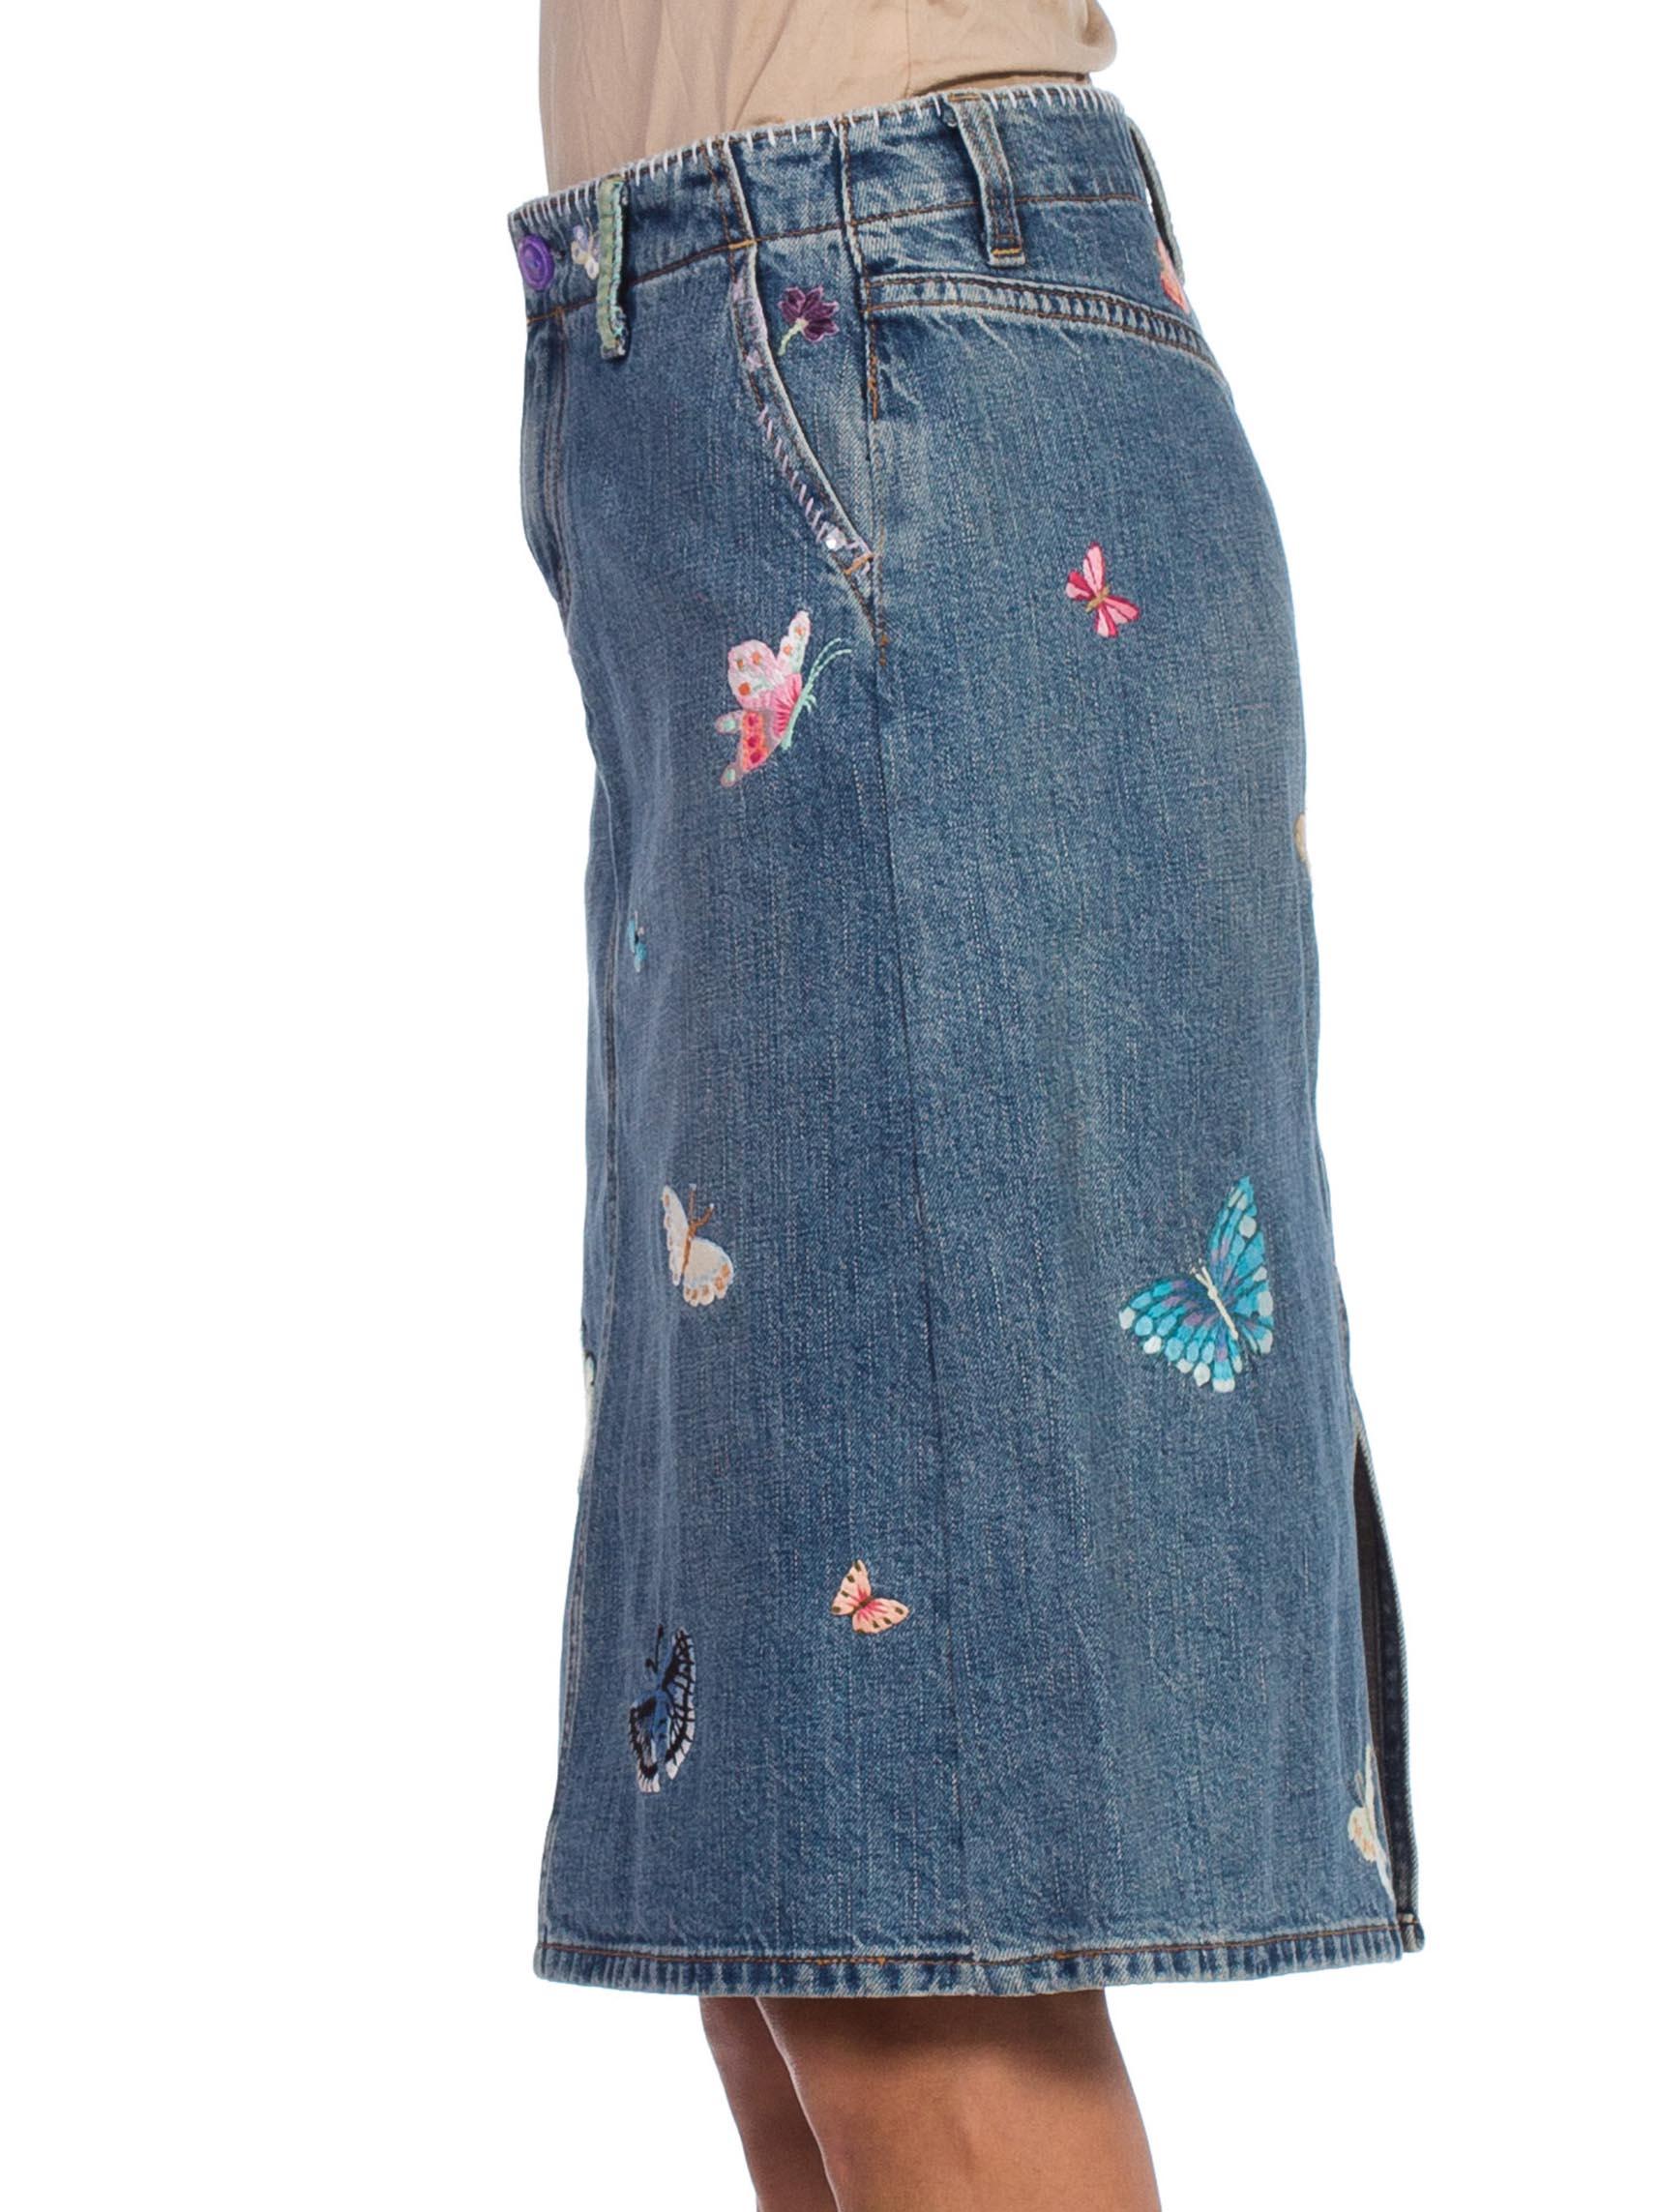 butterfly jean skirt